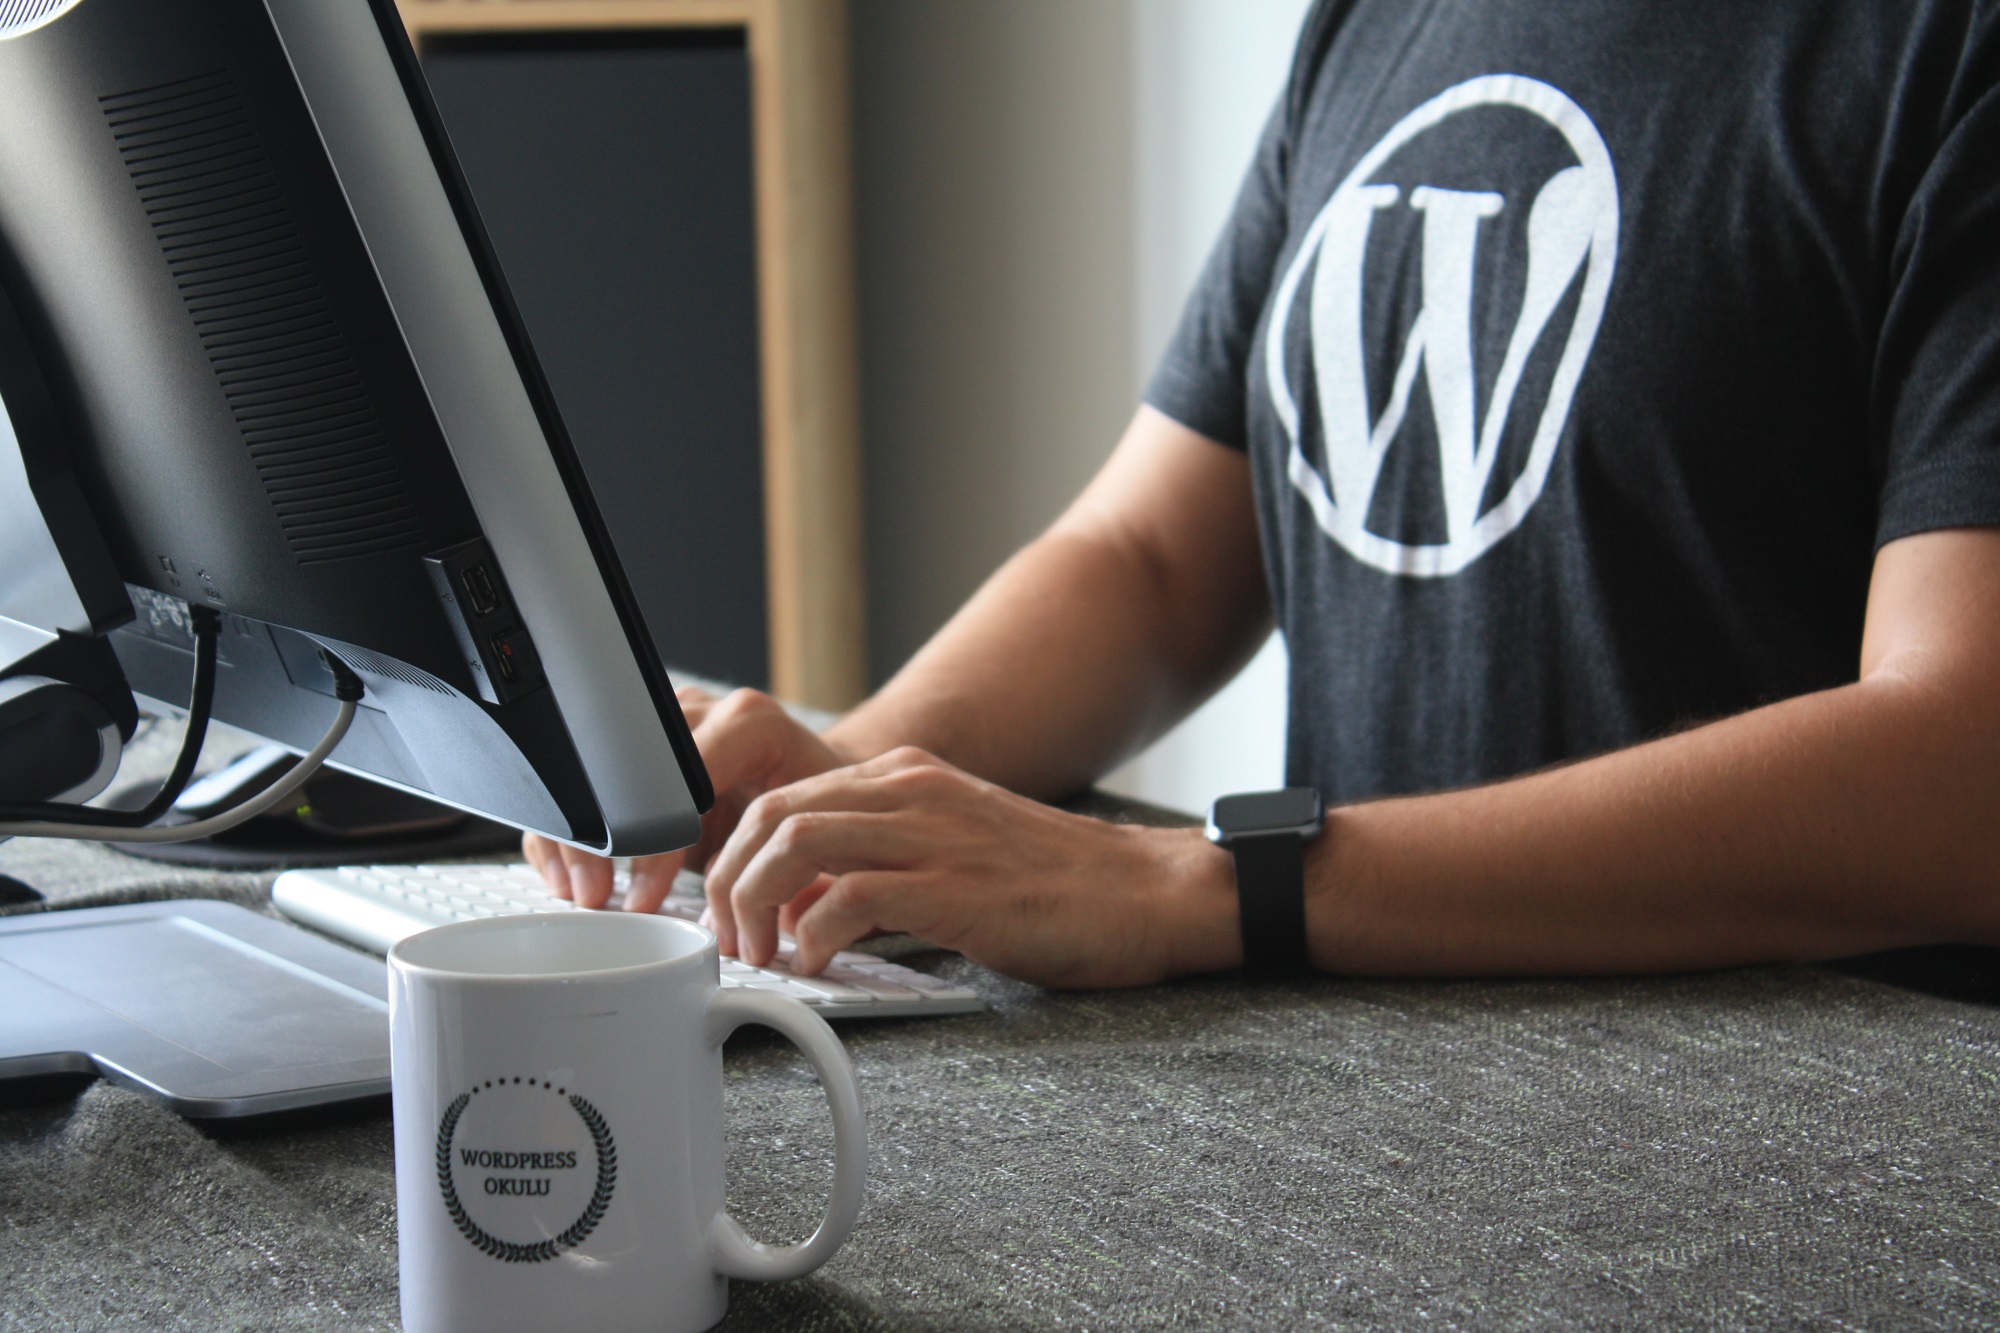 WordPress integra  ActivityPub per lanciarsi nel fediverso